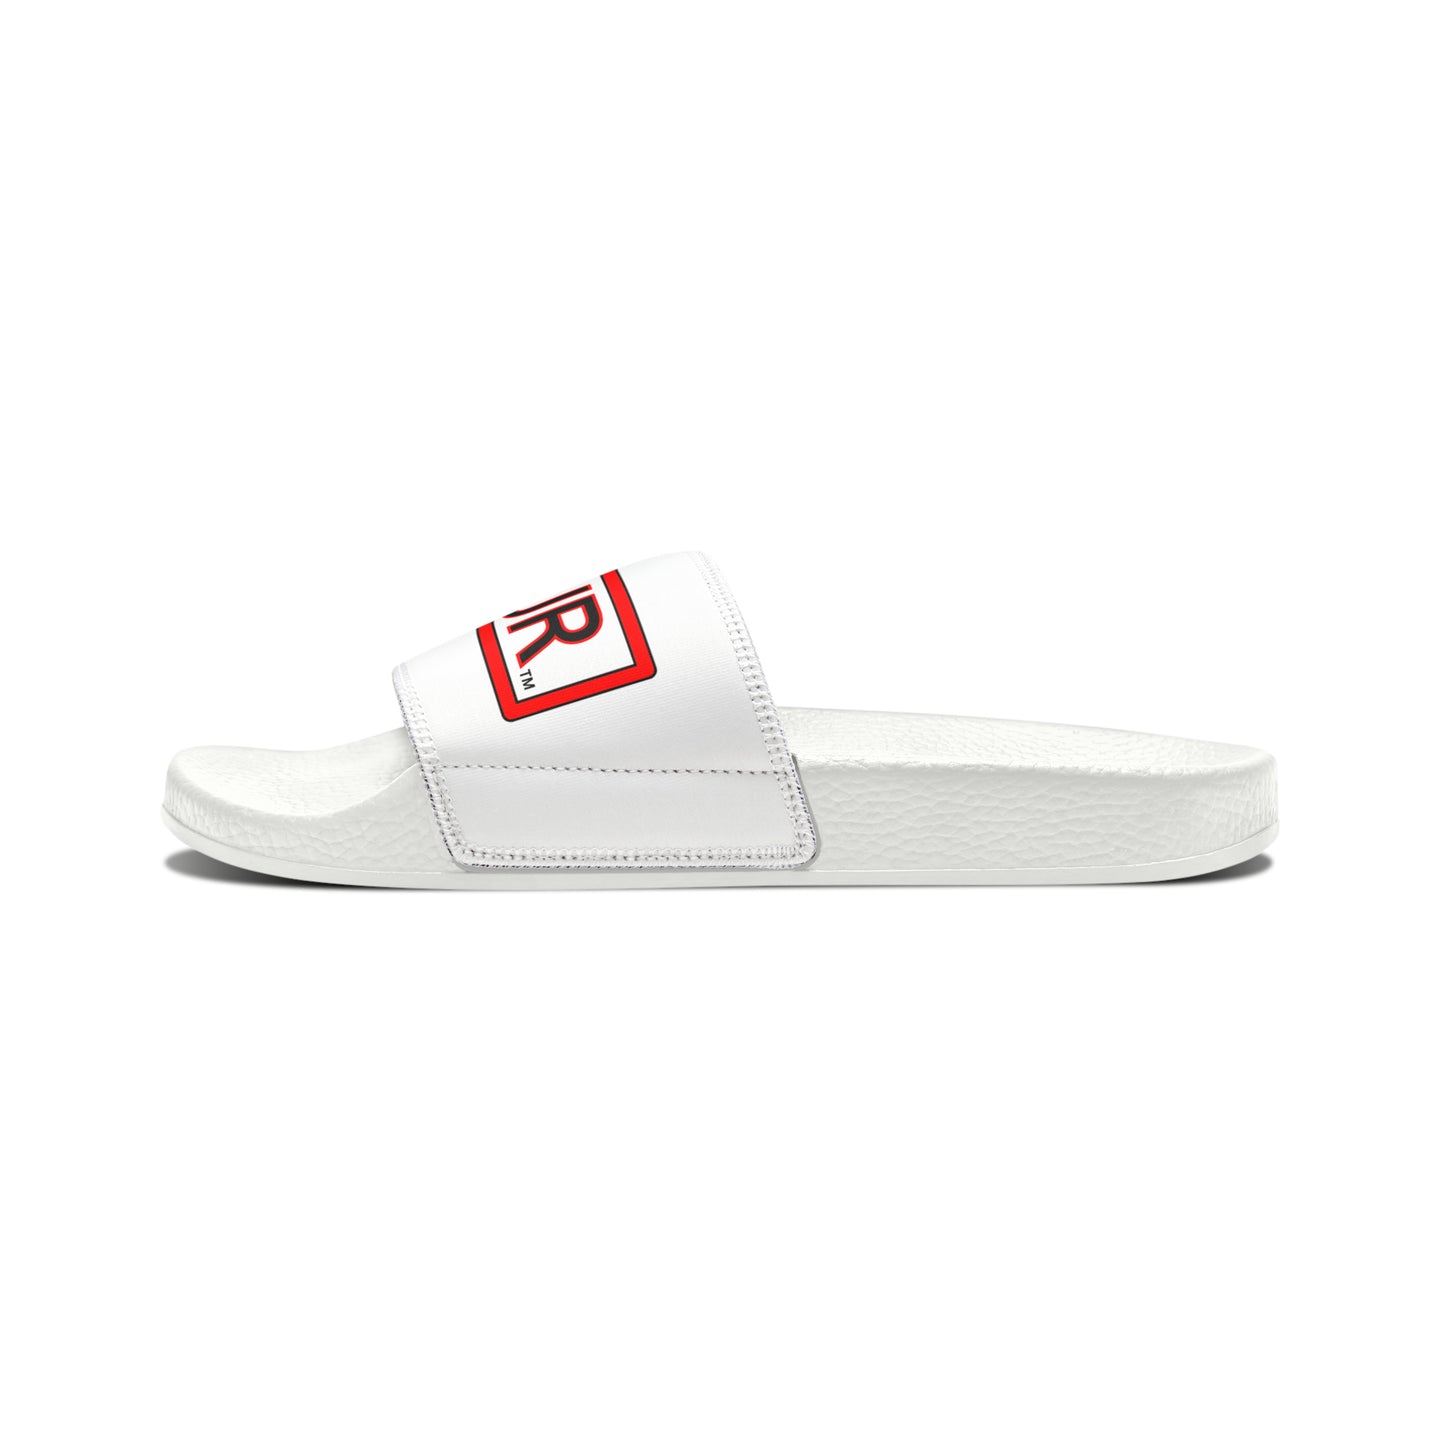 UB>UR-Men's PU Slide Sandals